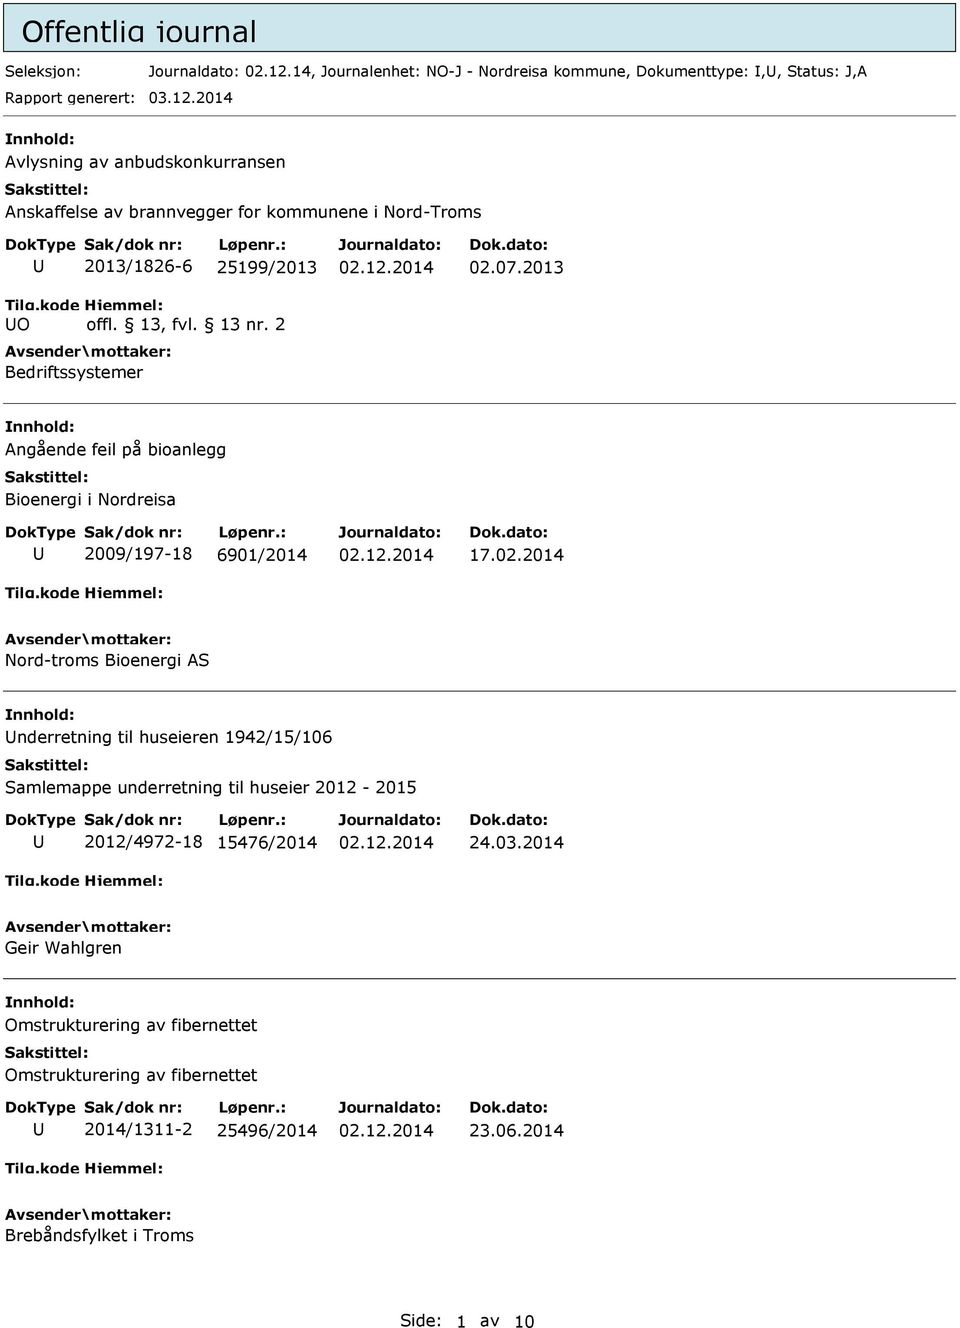 2014 Avlysning av anbudskonkurransen Anskaffelse av brannvegger for kommunene i Nord-Troms O 2013/1826-6 25199/2013 offl. 13, fvl. 13 nr. 2 Bedriftssystemer 02.07.